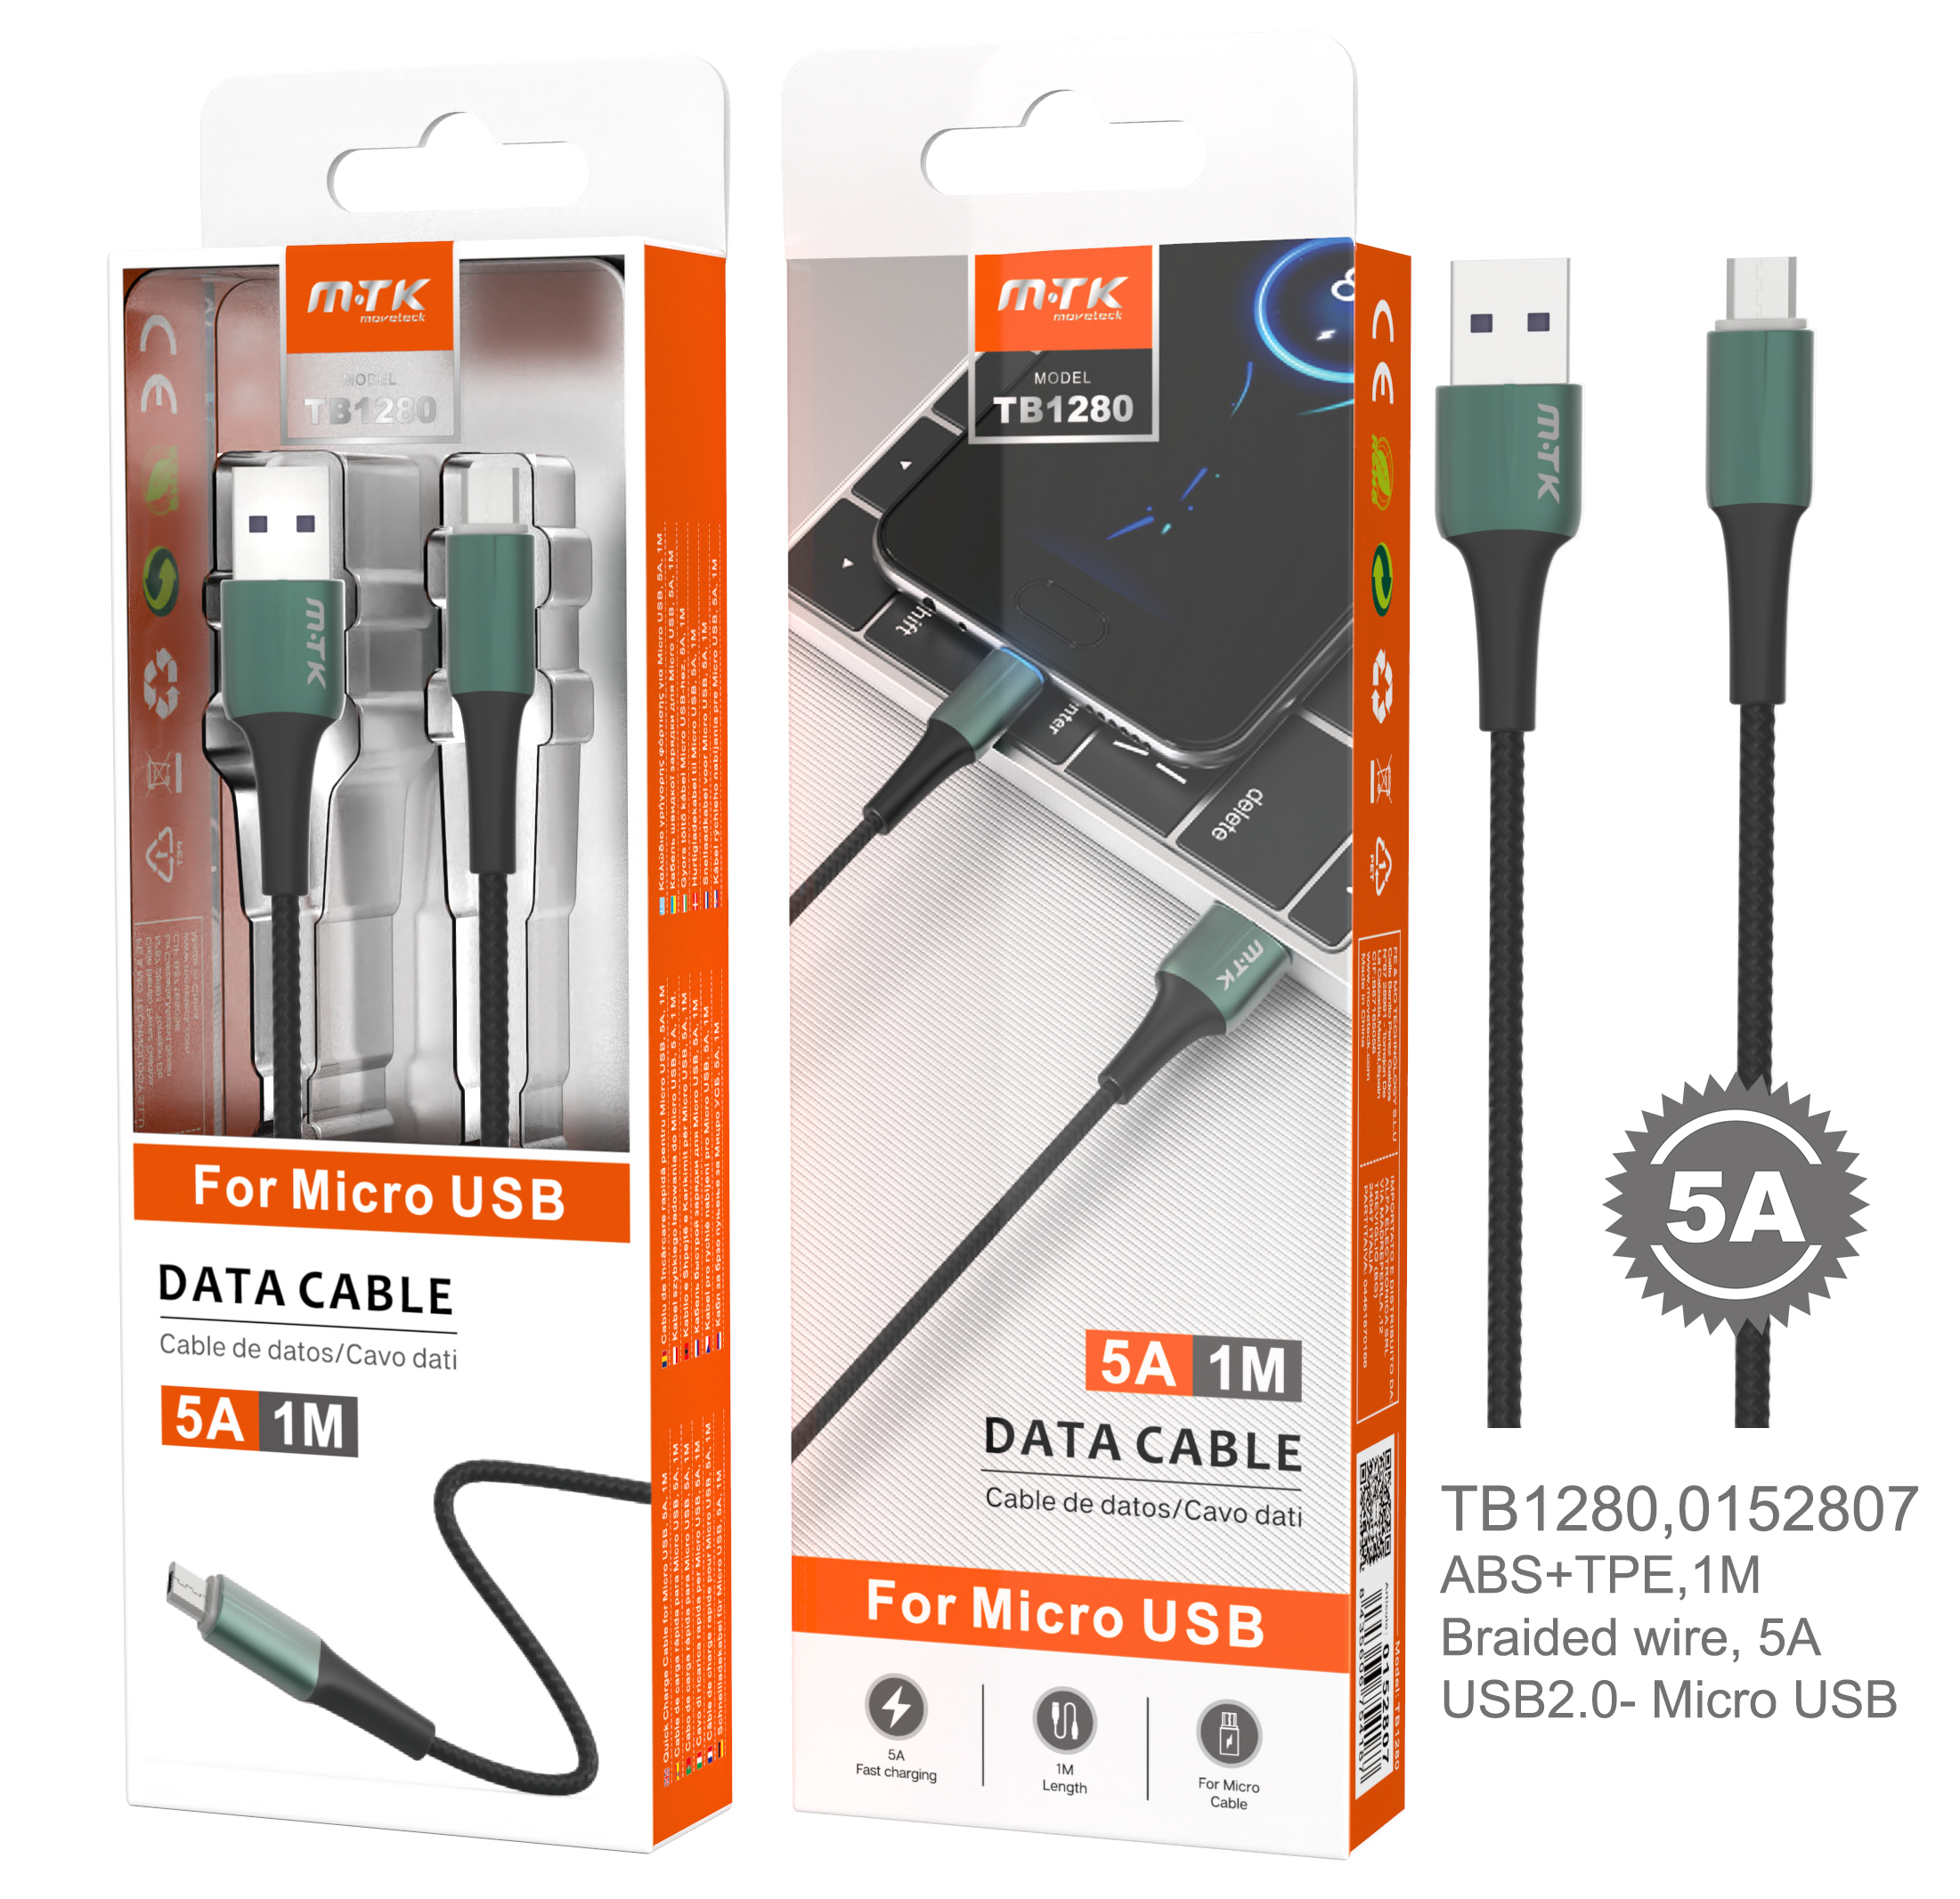 TB1280 VE Cable de Datos Metal Sword para Micro USB, Cable Nylon trenzado con Luz LED Azul, 1M, 5A, Verde Oscuro